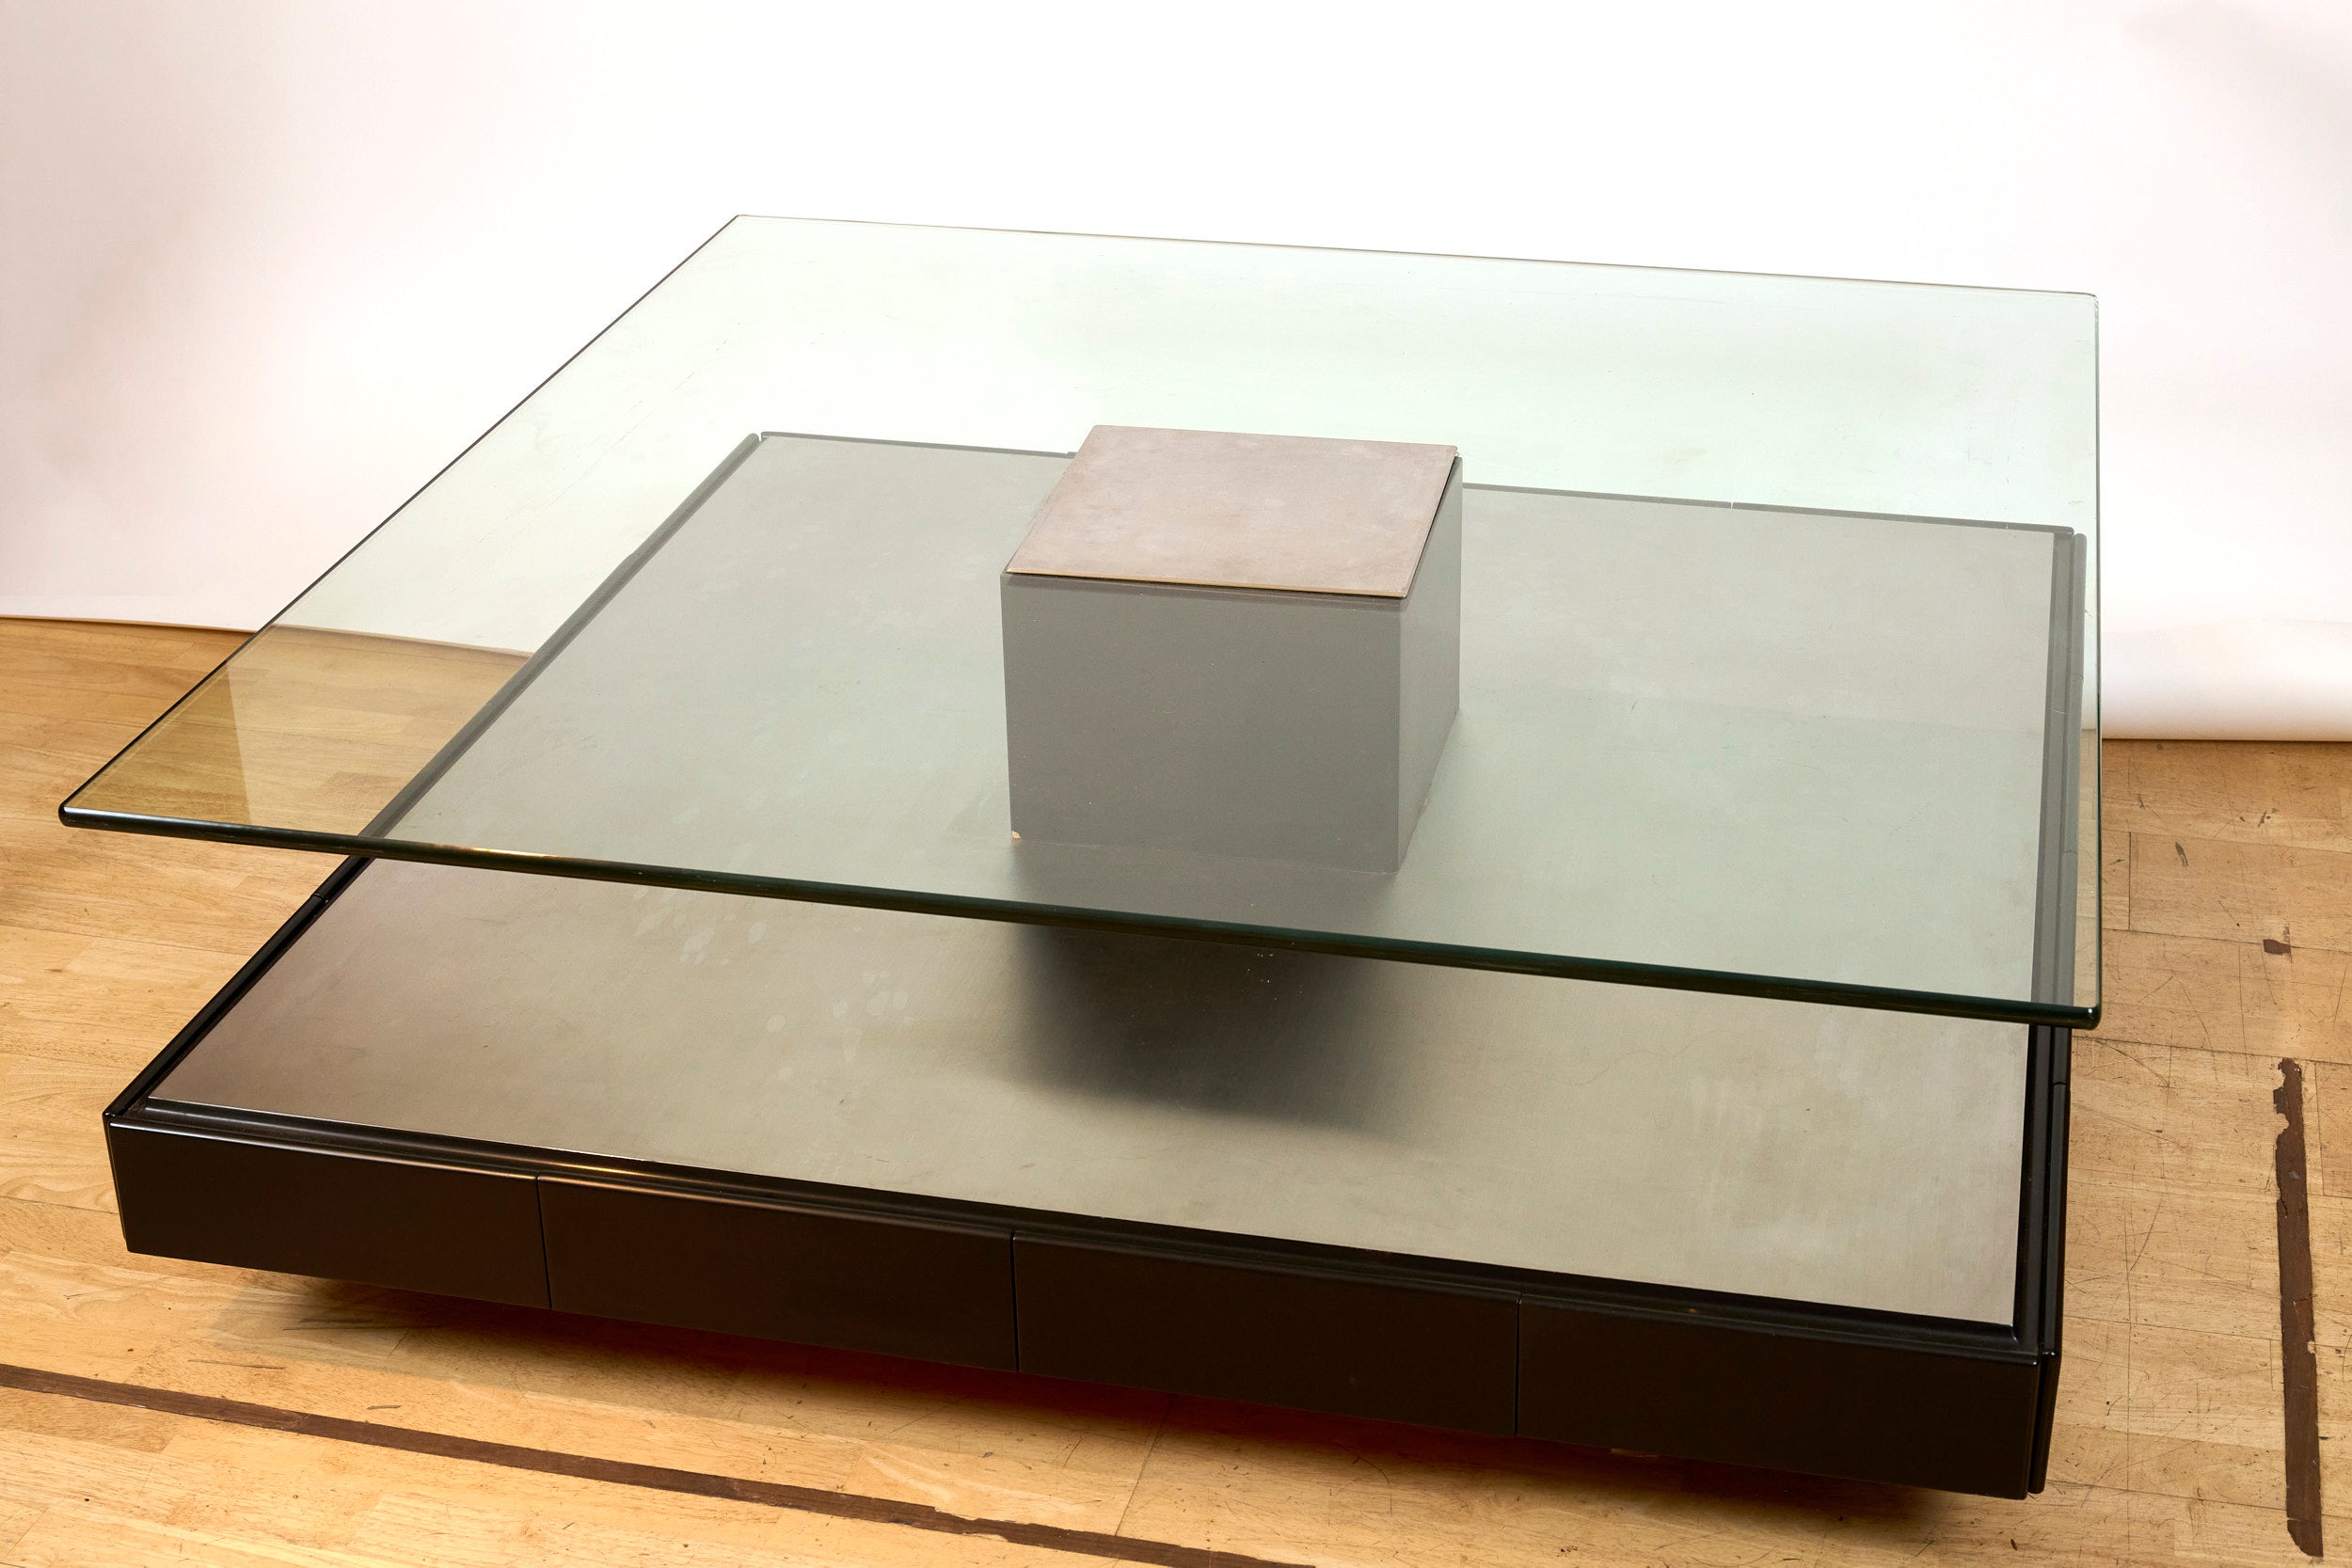 Marco Fantoni Couchtisch für Tecno um 1970.

Ein hervorragender minimalistischer Couchtisch mit einem Sockel aus gebürstetem Metall auf Holz, der acht Schubladen und eine dicke Glasplatte mit gebürstetem Metalleinsatz enthält. Acht Rollen an der